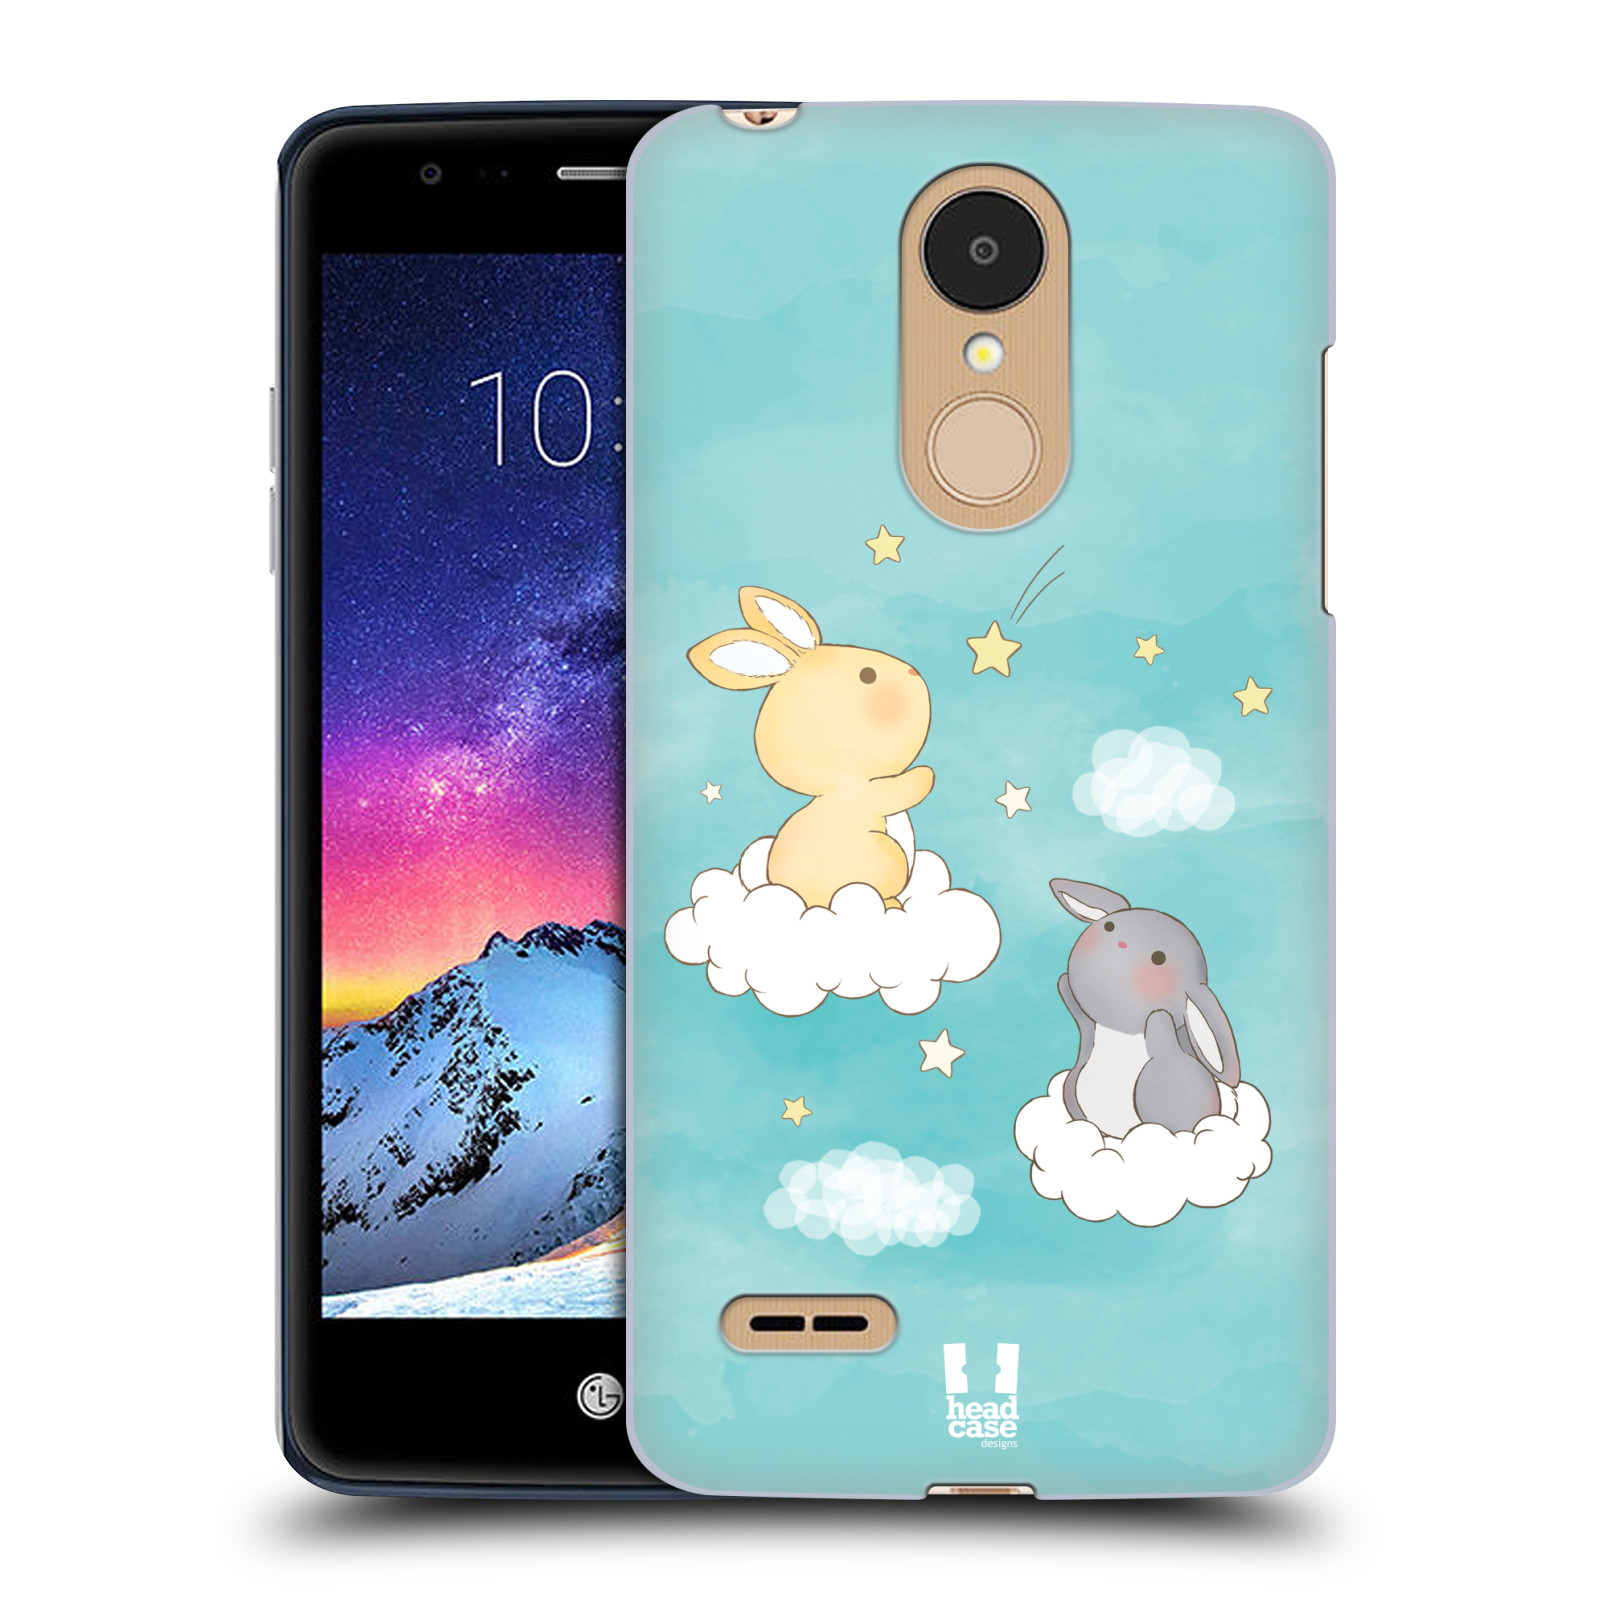 HEAD CASE plastový obal na mobil LG K9 / K8 2018 vzor králíček a hvězdy modrá